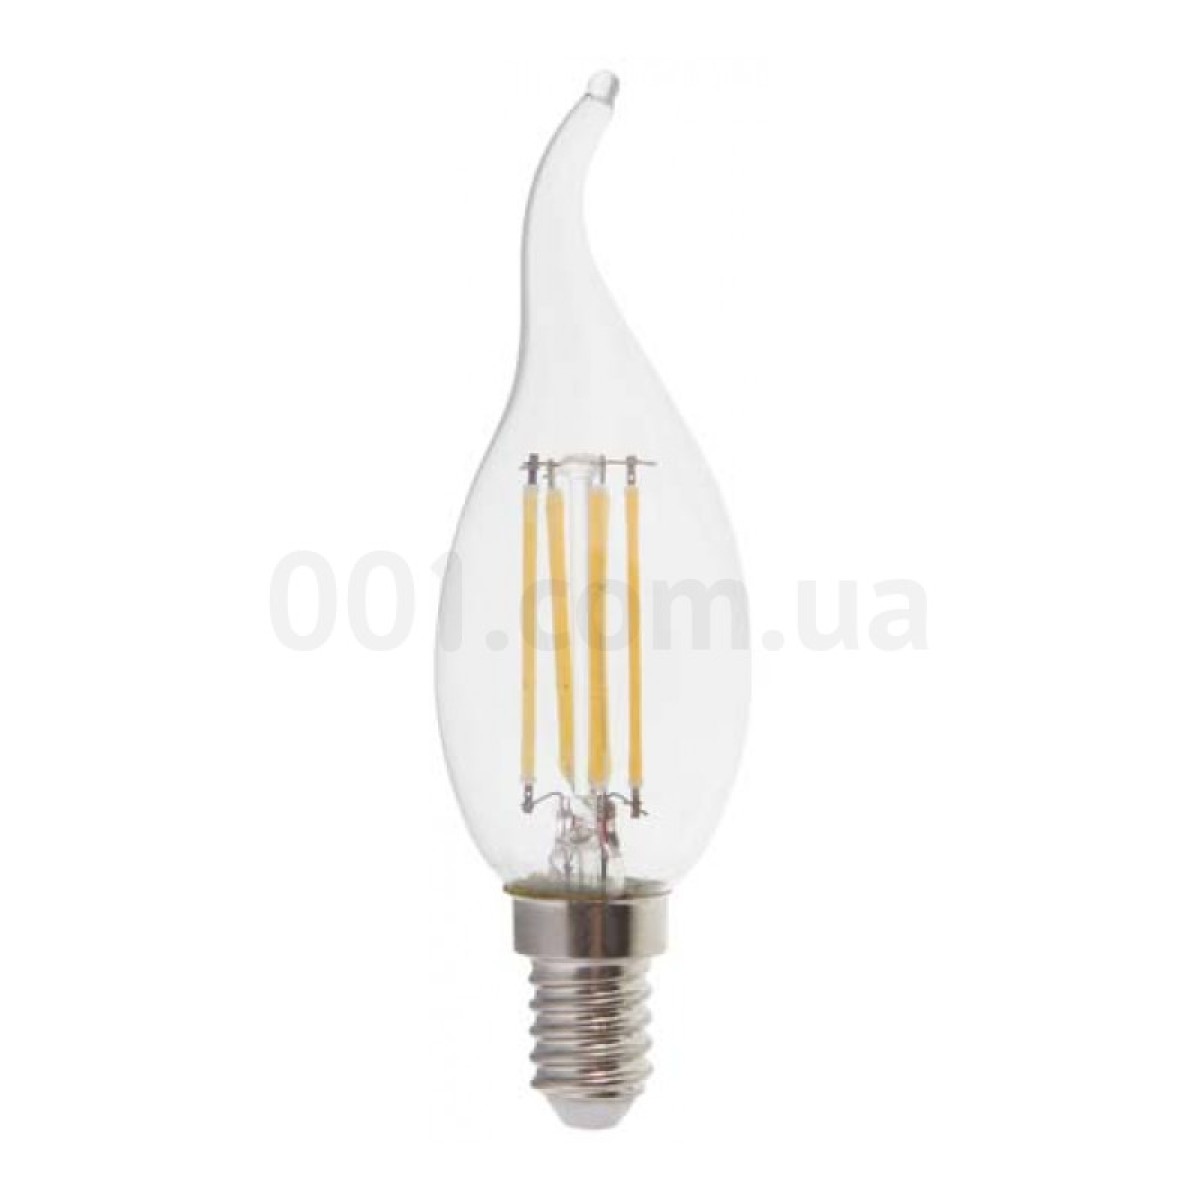 Світлодіодна лампа LB-59 CF37 (свічка на вітрі) філамент 4Вт 4000K E14, Feron 256_256.jpg